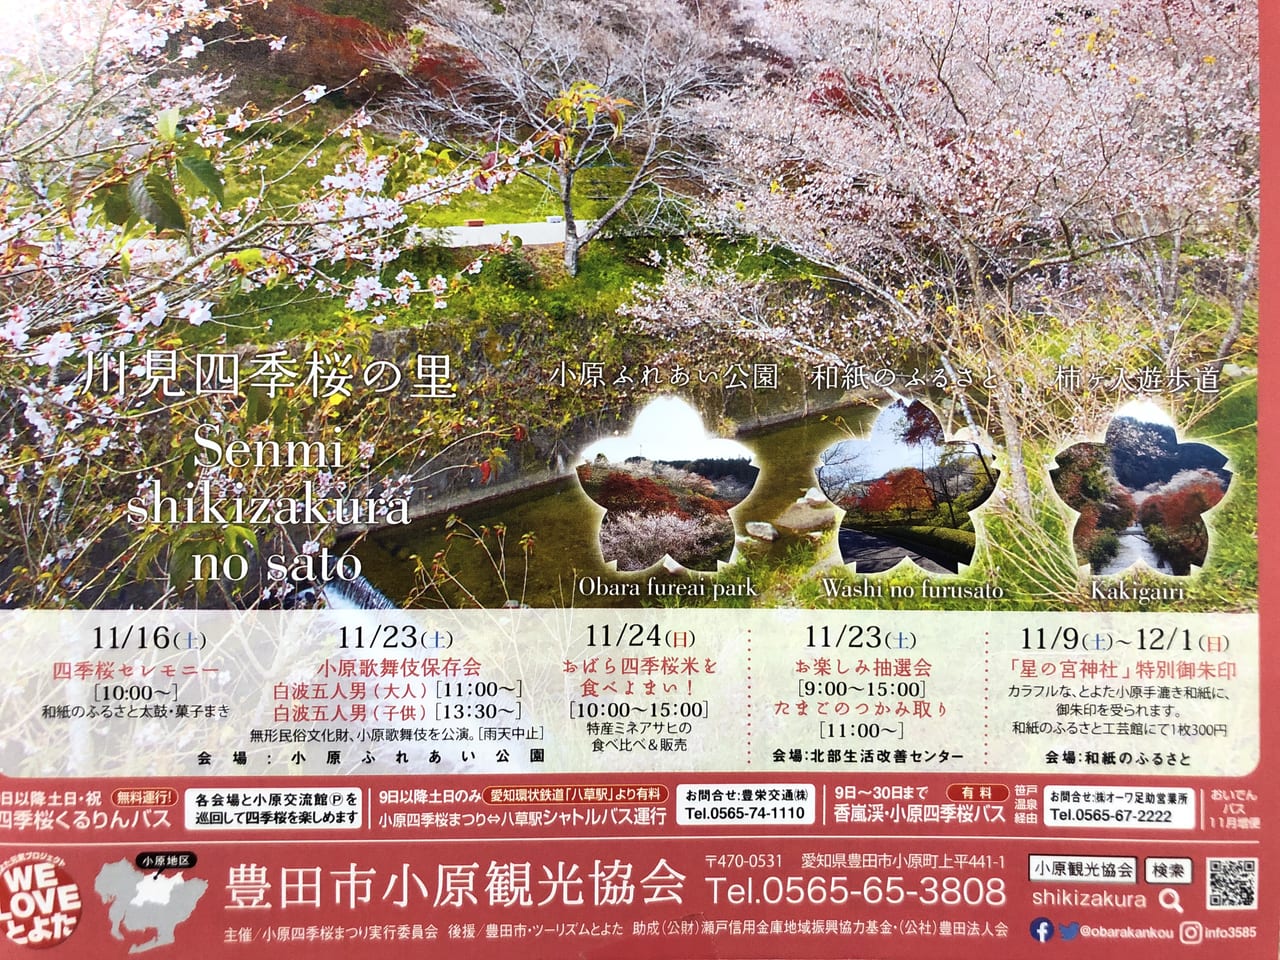 2019年11月1日から開催されている「四季桜まつり」